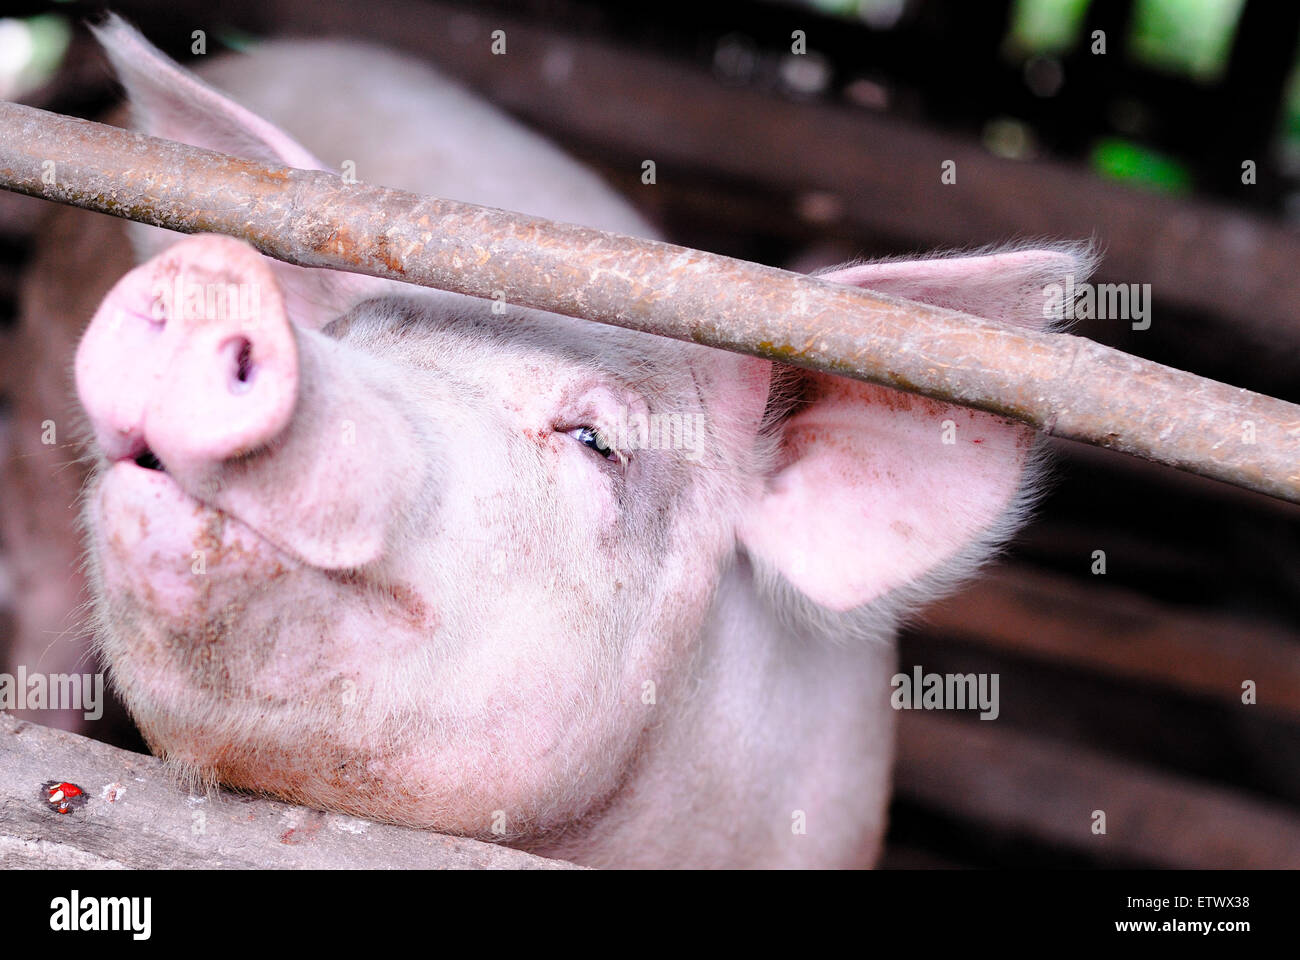 Sorriso piccolo di maiale in una fattoria Foto Stock